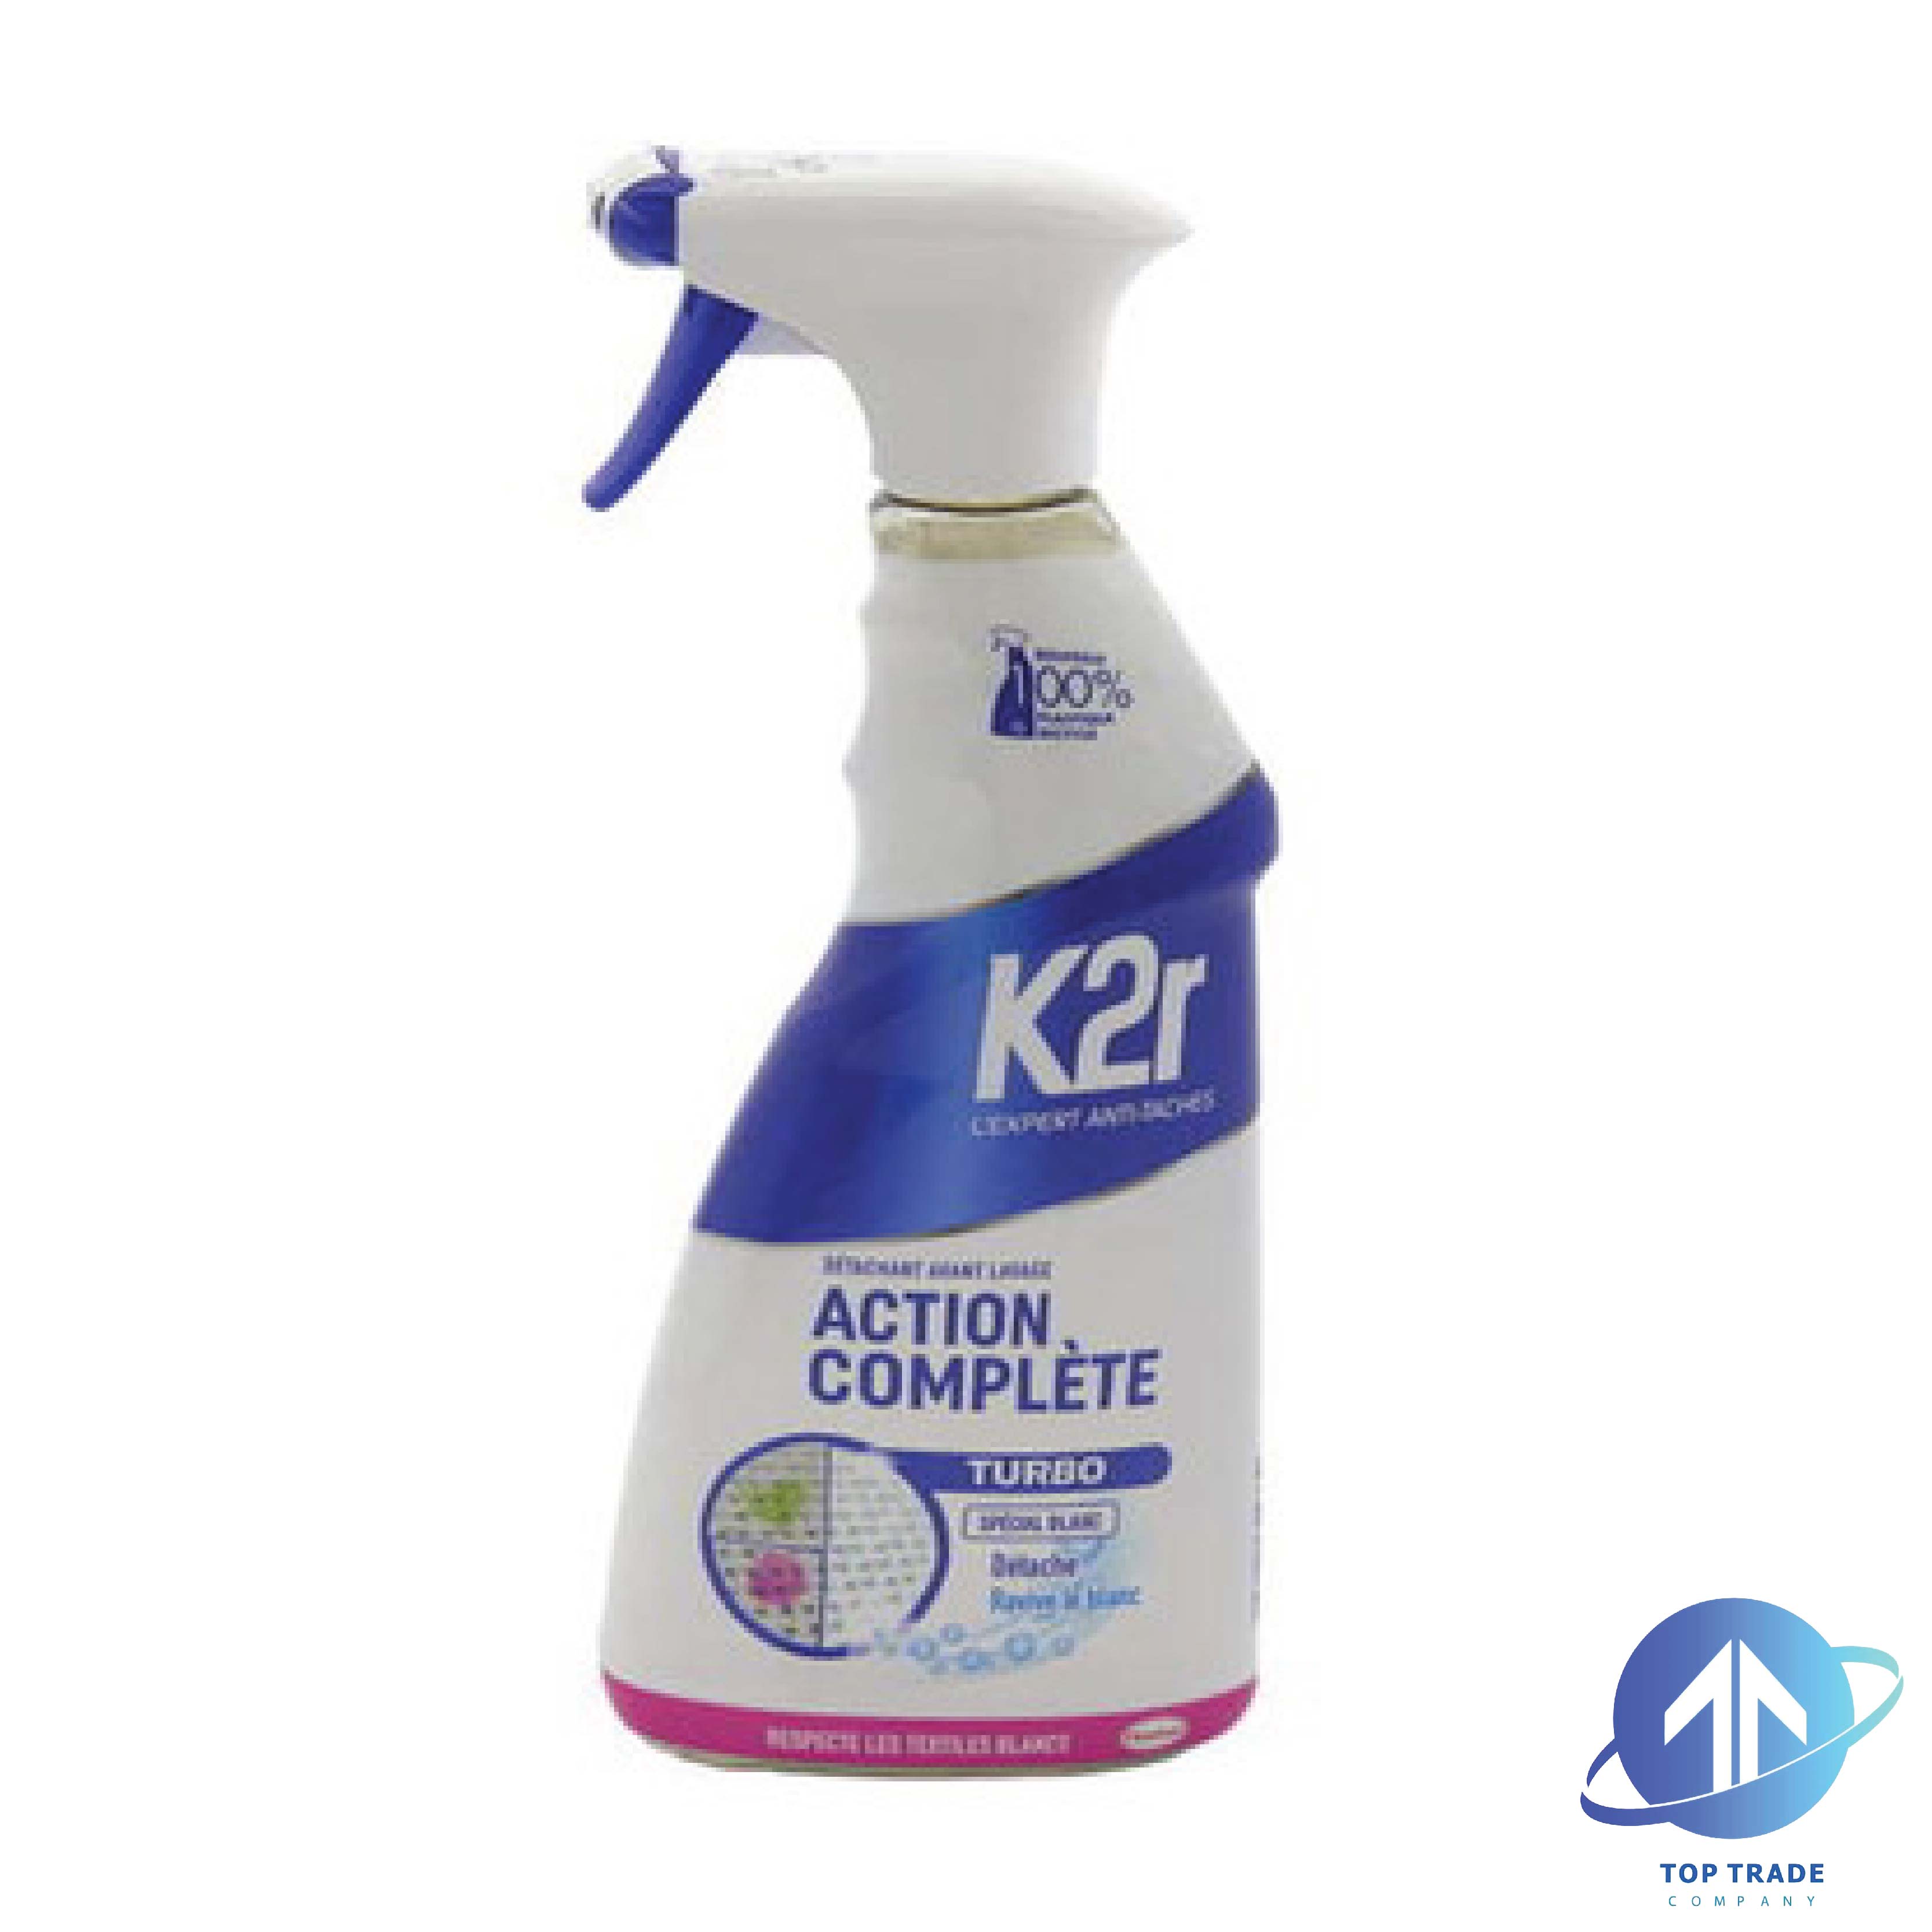 K2R prewash stainremover spray 500ml Special White